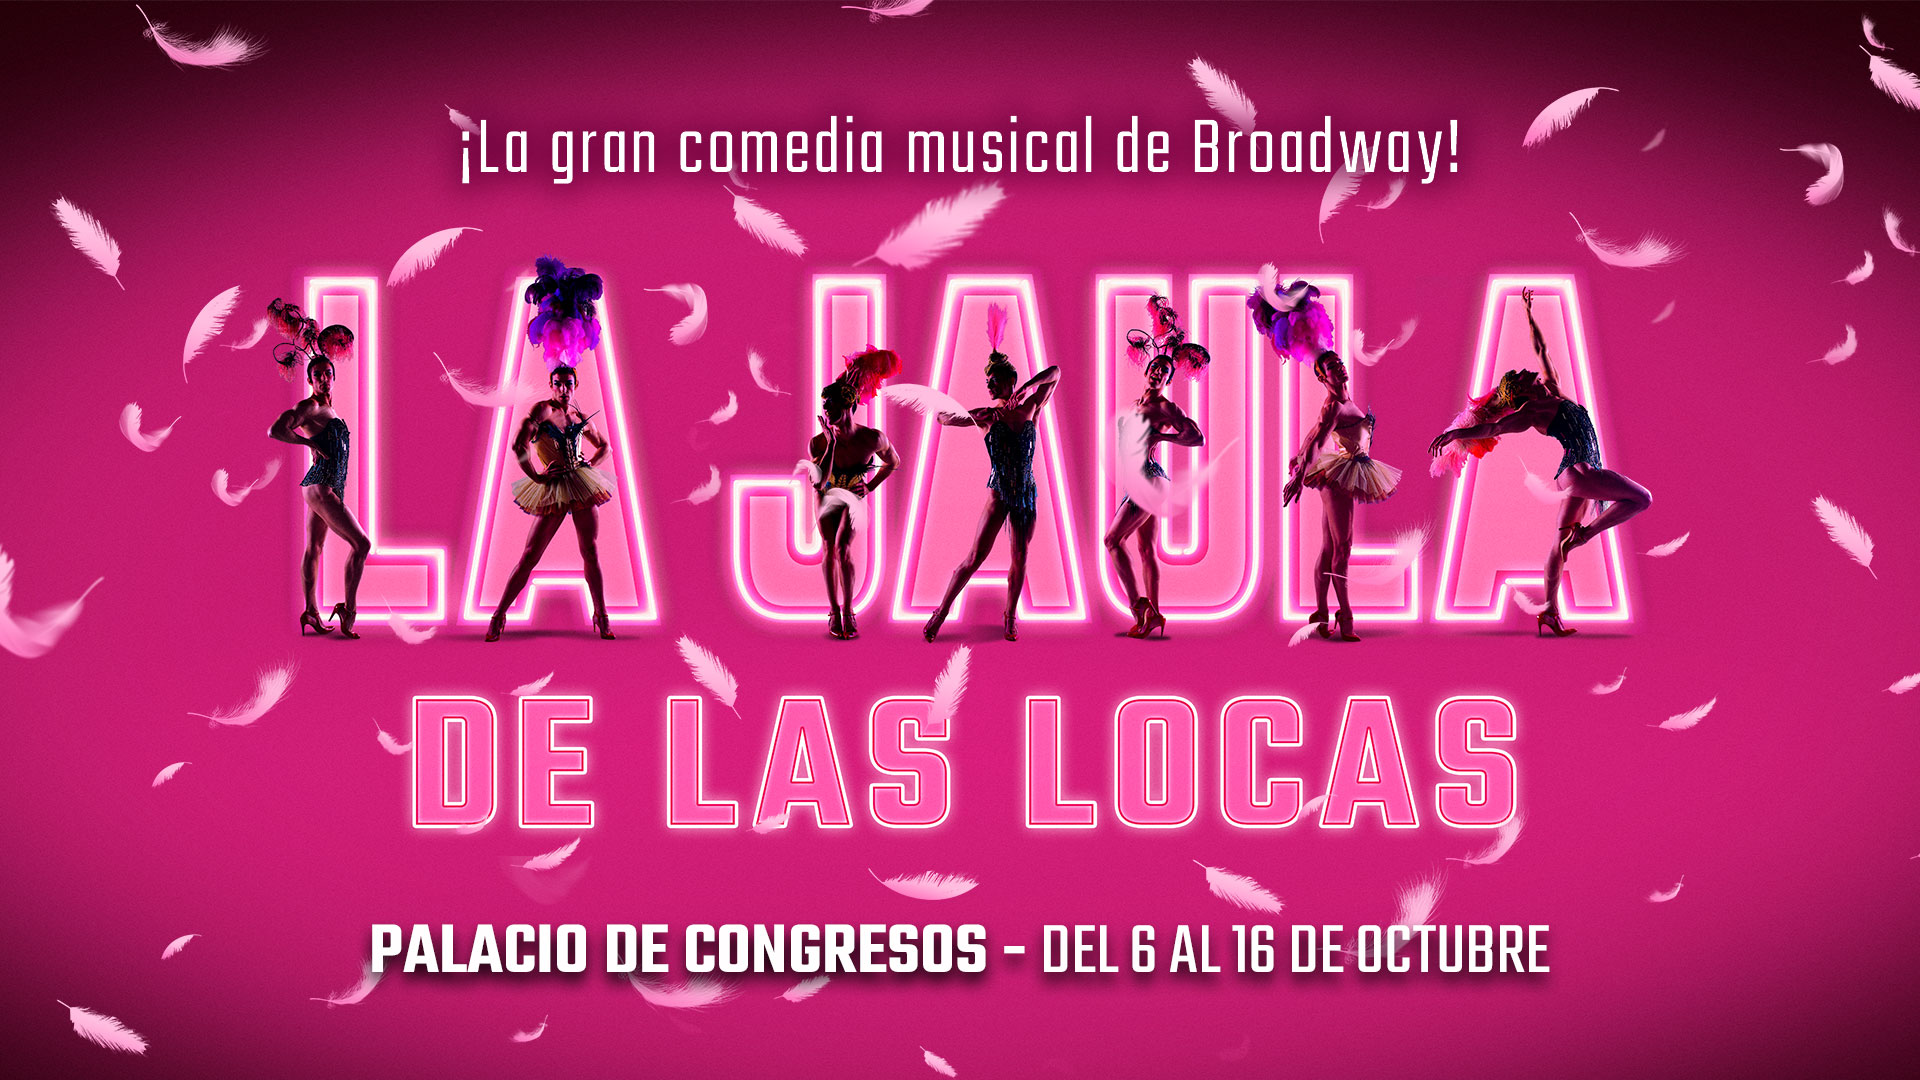 NdP Musical La Jaula de las Locas_Zaragoza